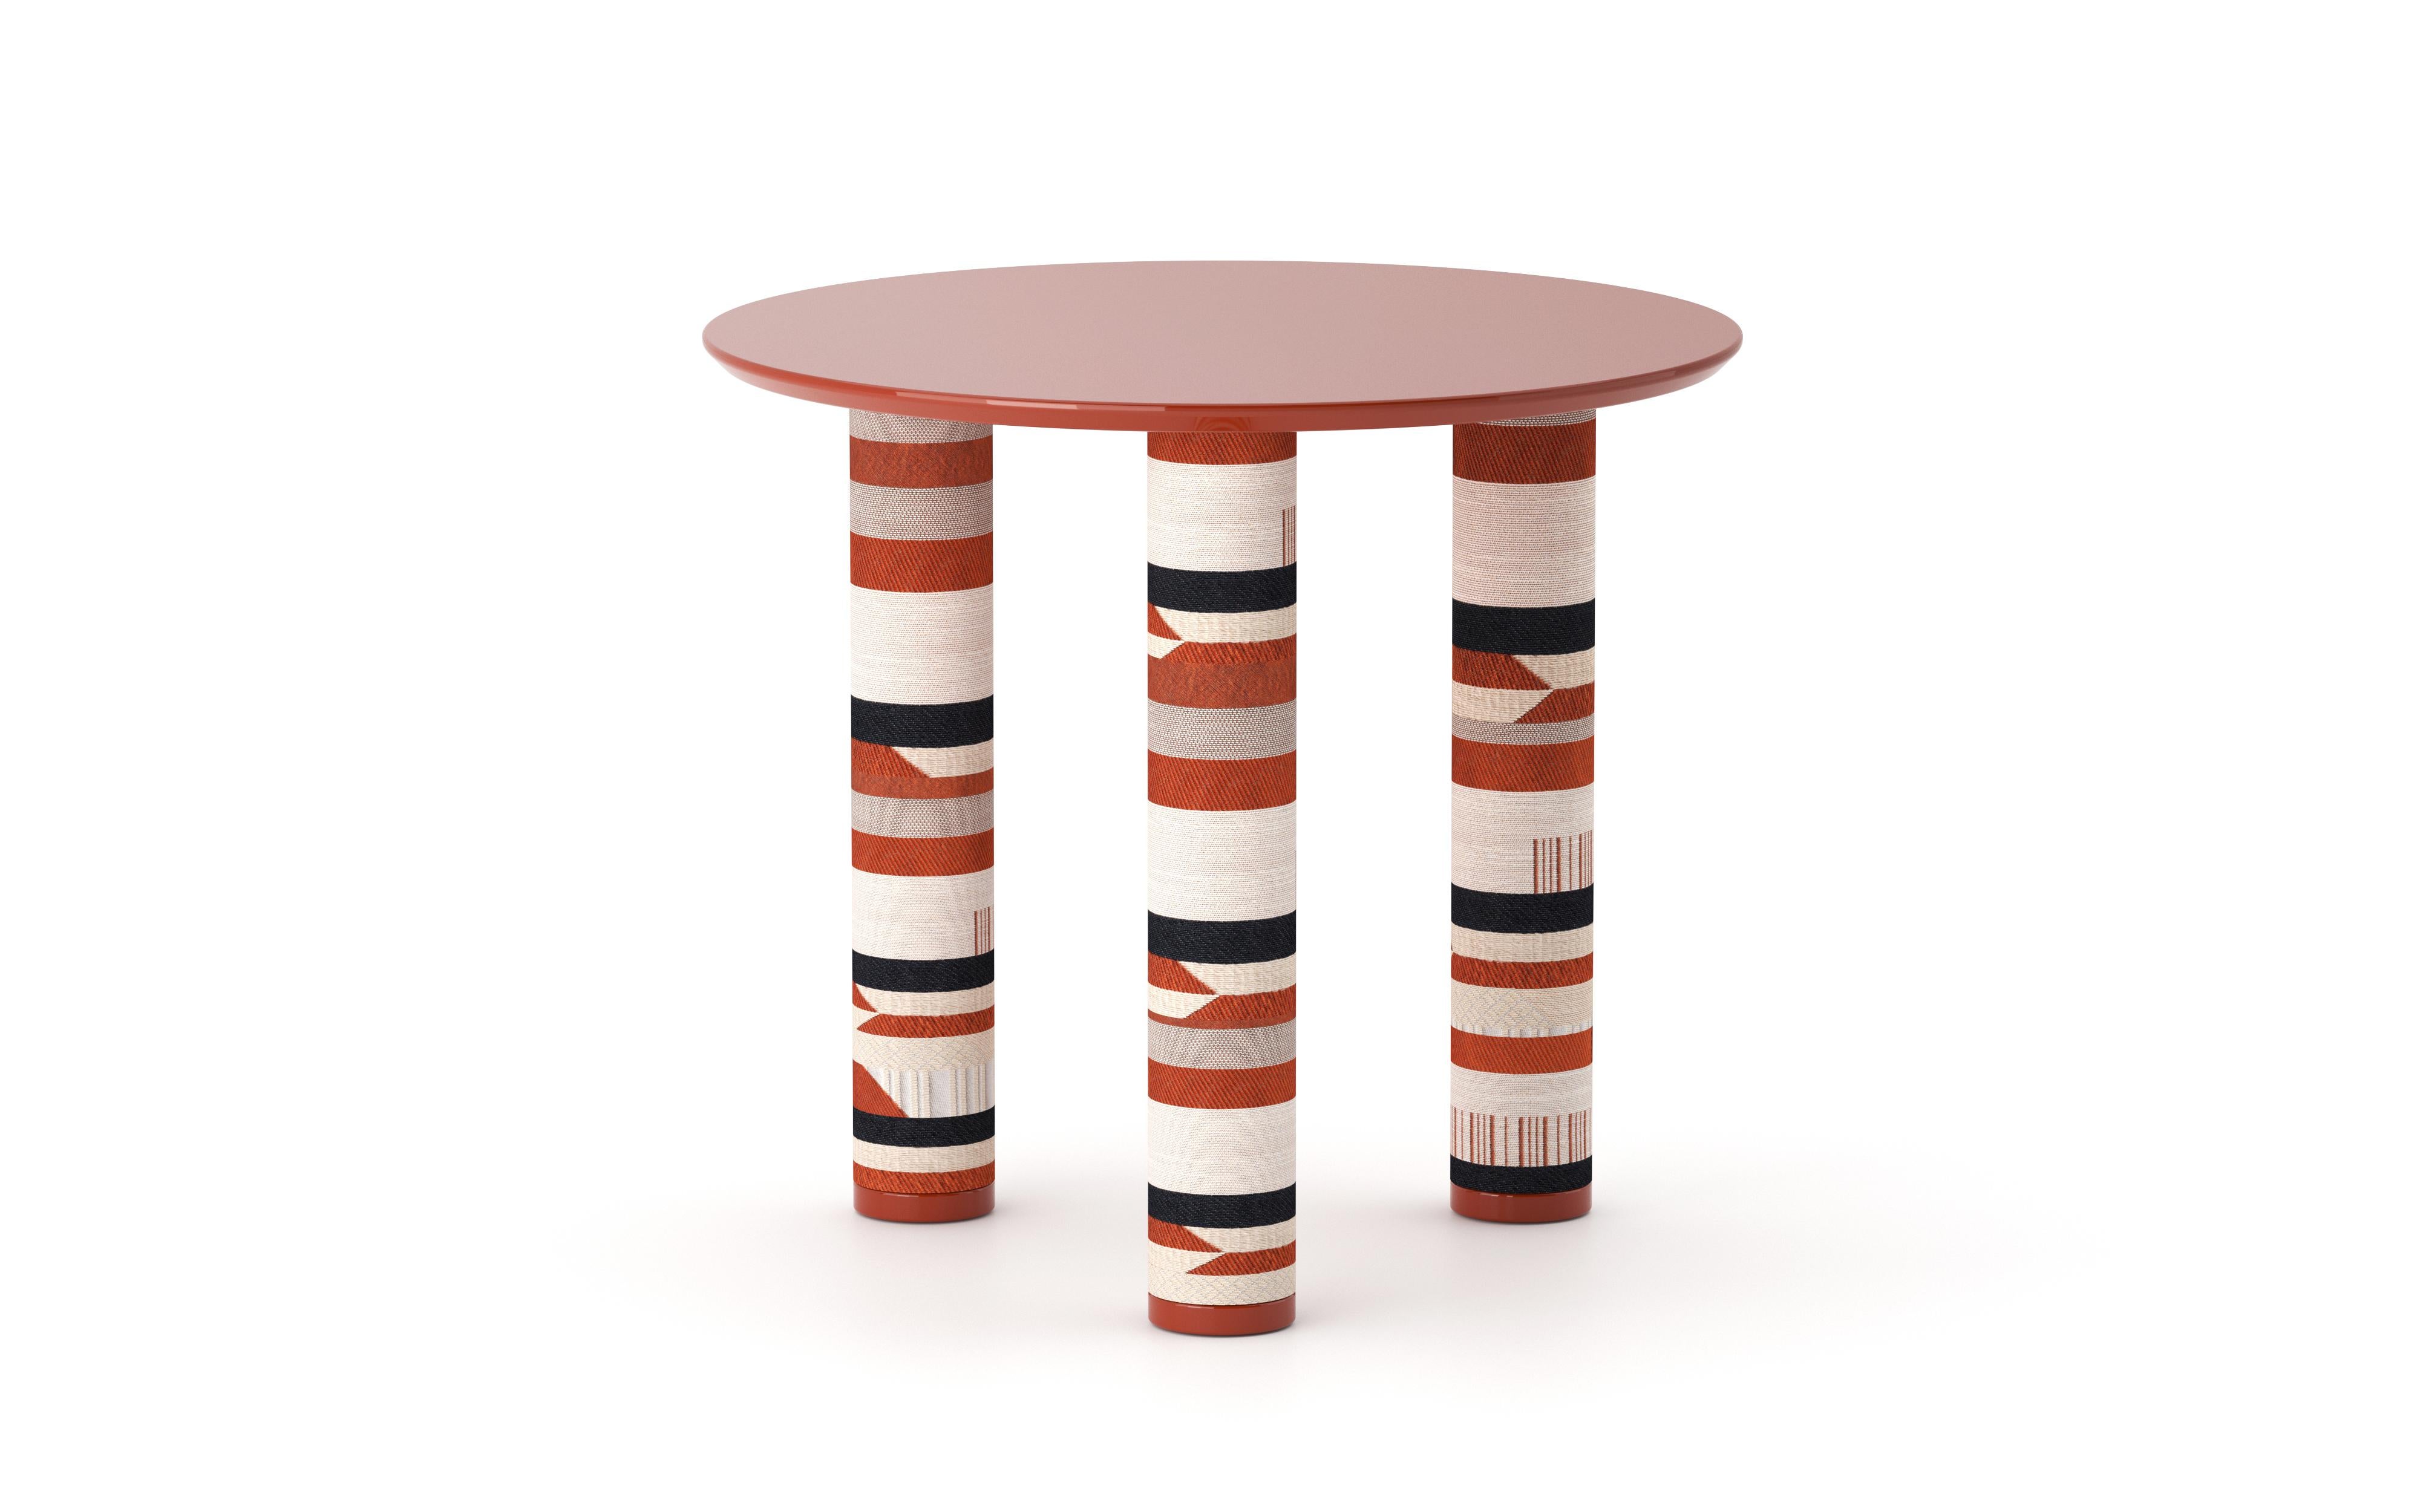 UMA Round 50 ist der kleinste niedrige Tisch aus der gleichnamigen Kollektion, die von Ludovica+Roberto Palomba für P + C Edizioni im Frühjahr 2022 entworfen wurde.
Die runde Harzplatte von UMA Round 50 setzt den Designakzent auf die zylindrischen